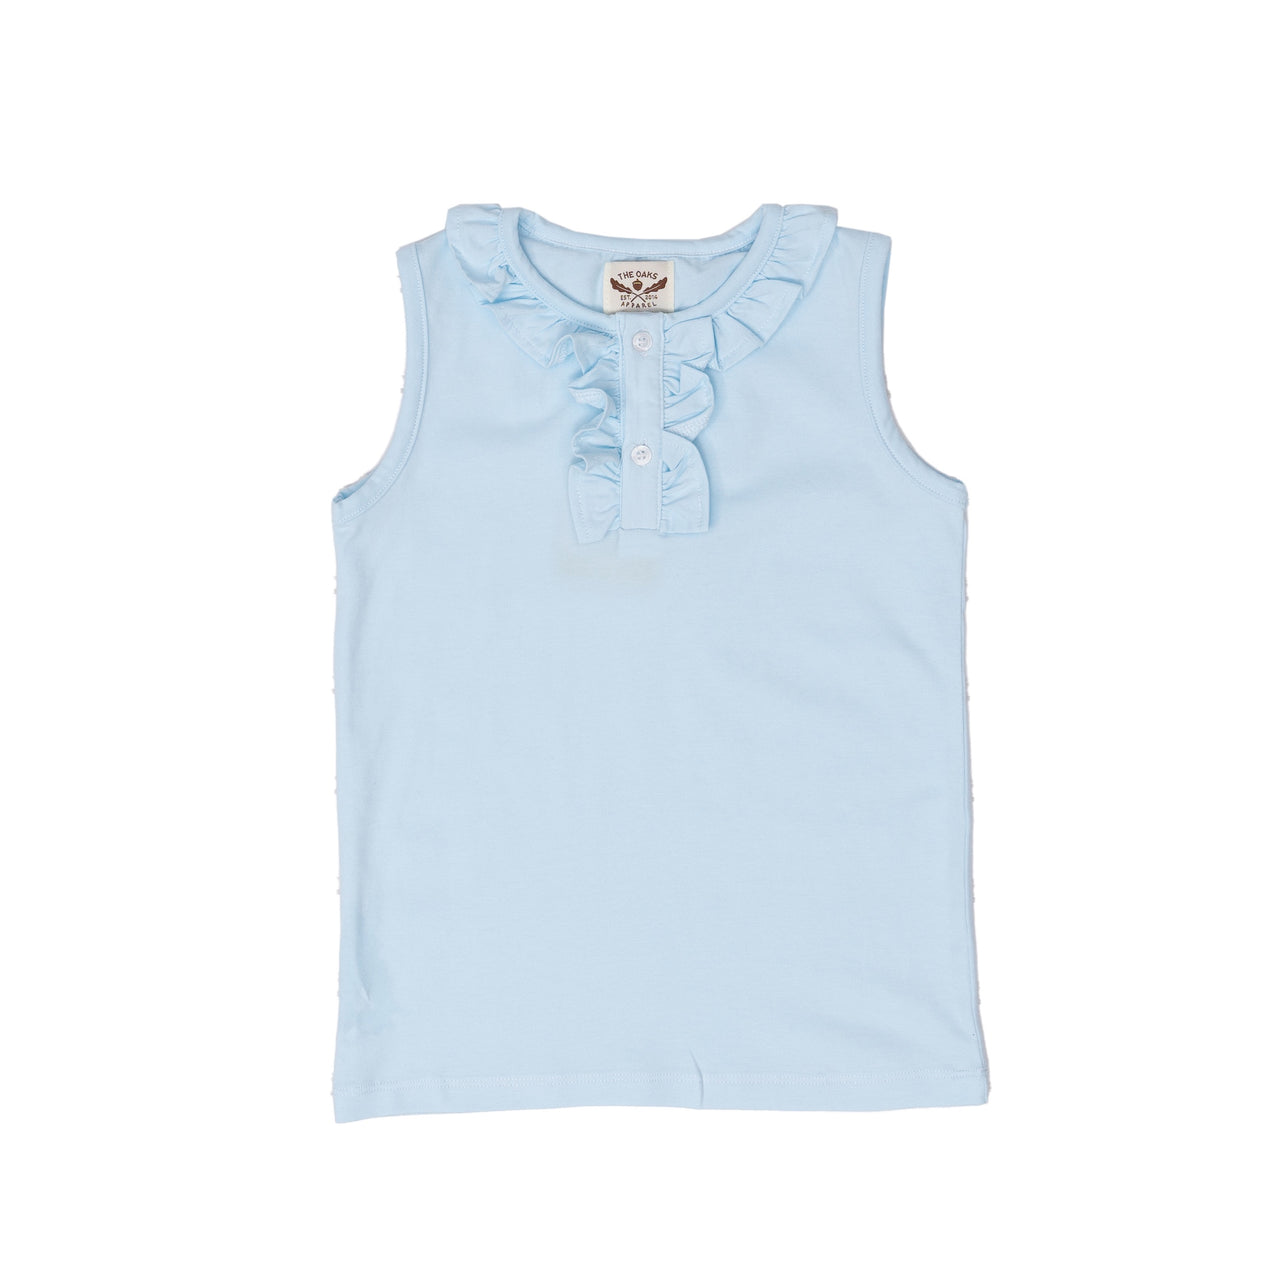 The Oaks Lucy Shirt Light Blue LC105 5012